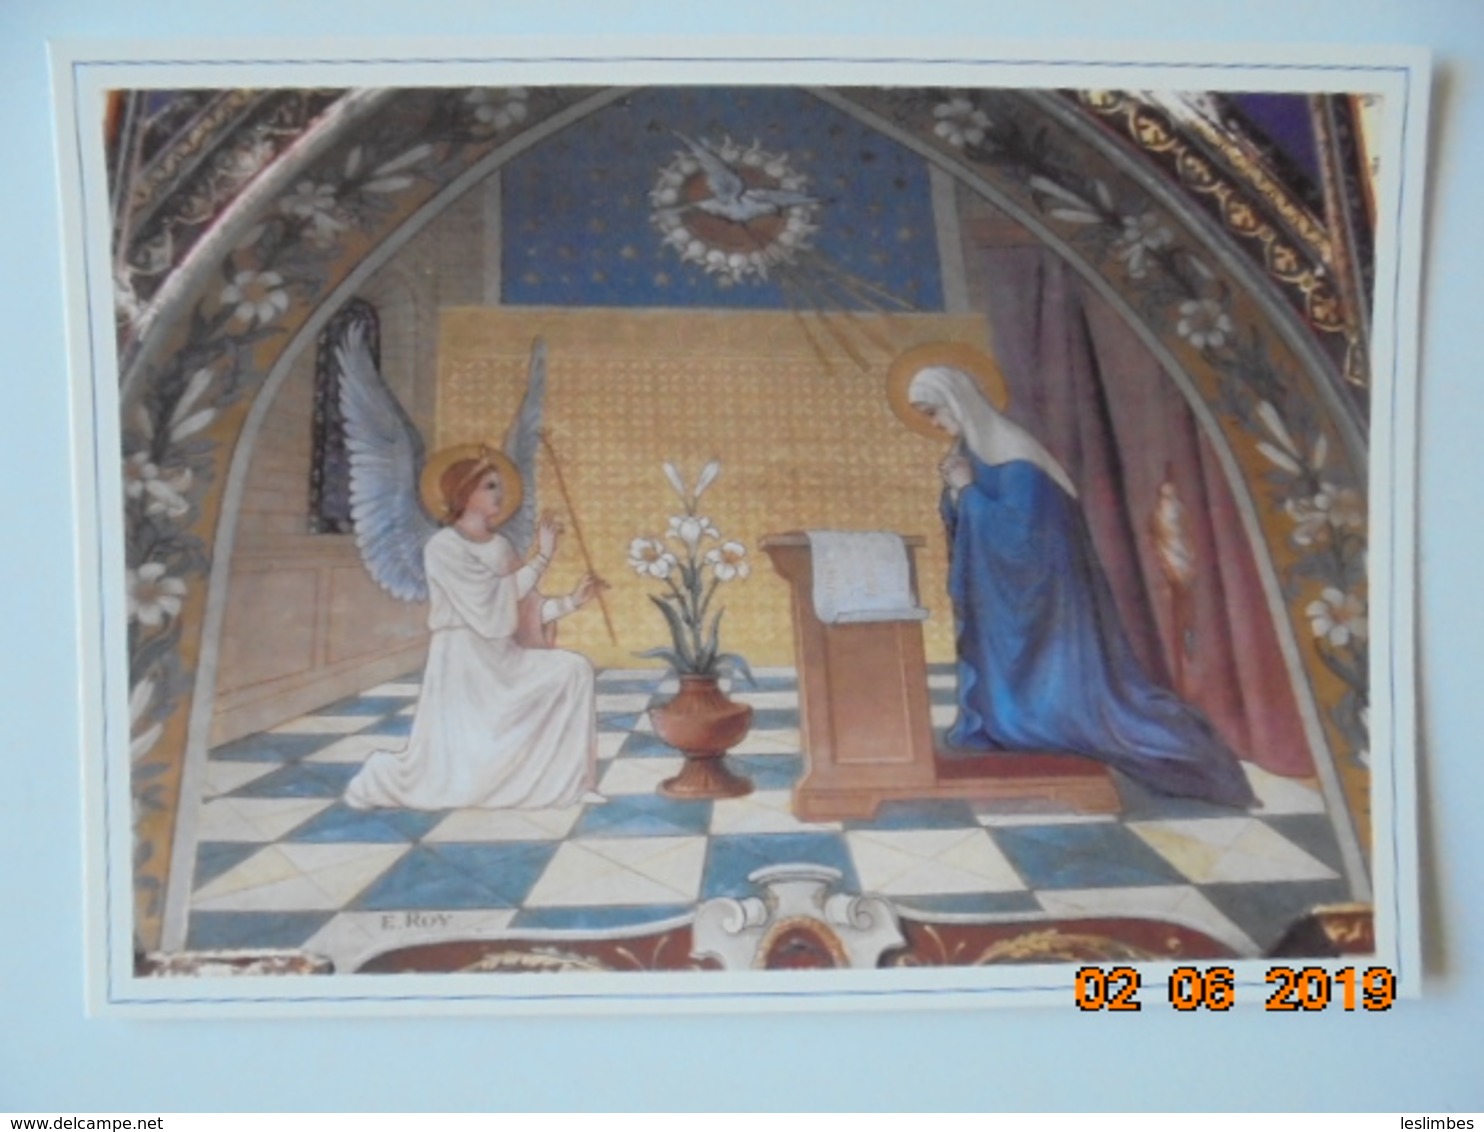 Paroisse Ste Marie Des Olonnes. Eglise Notre Dame De Bon Port. Fresque De L'Annonciation. E. Roy, 1913. Chapelle - Paintings